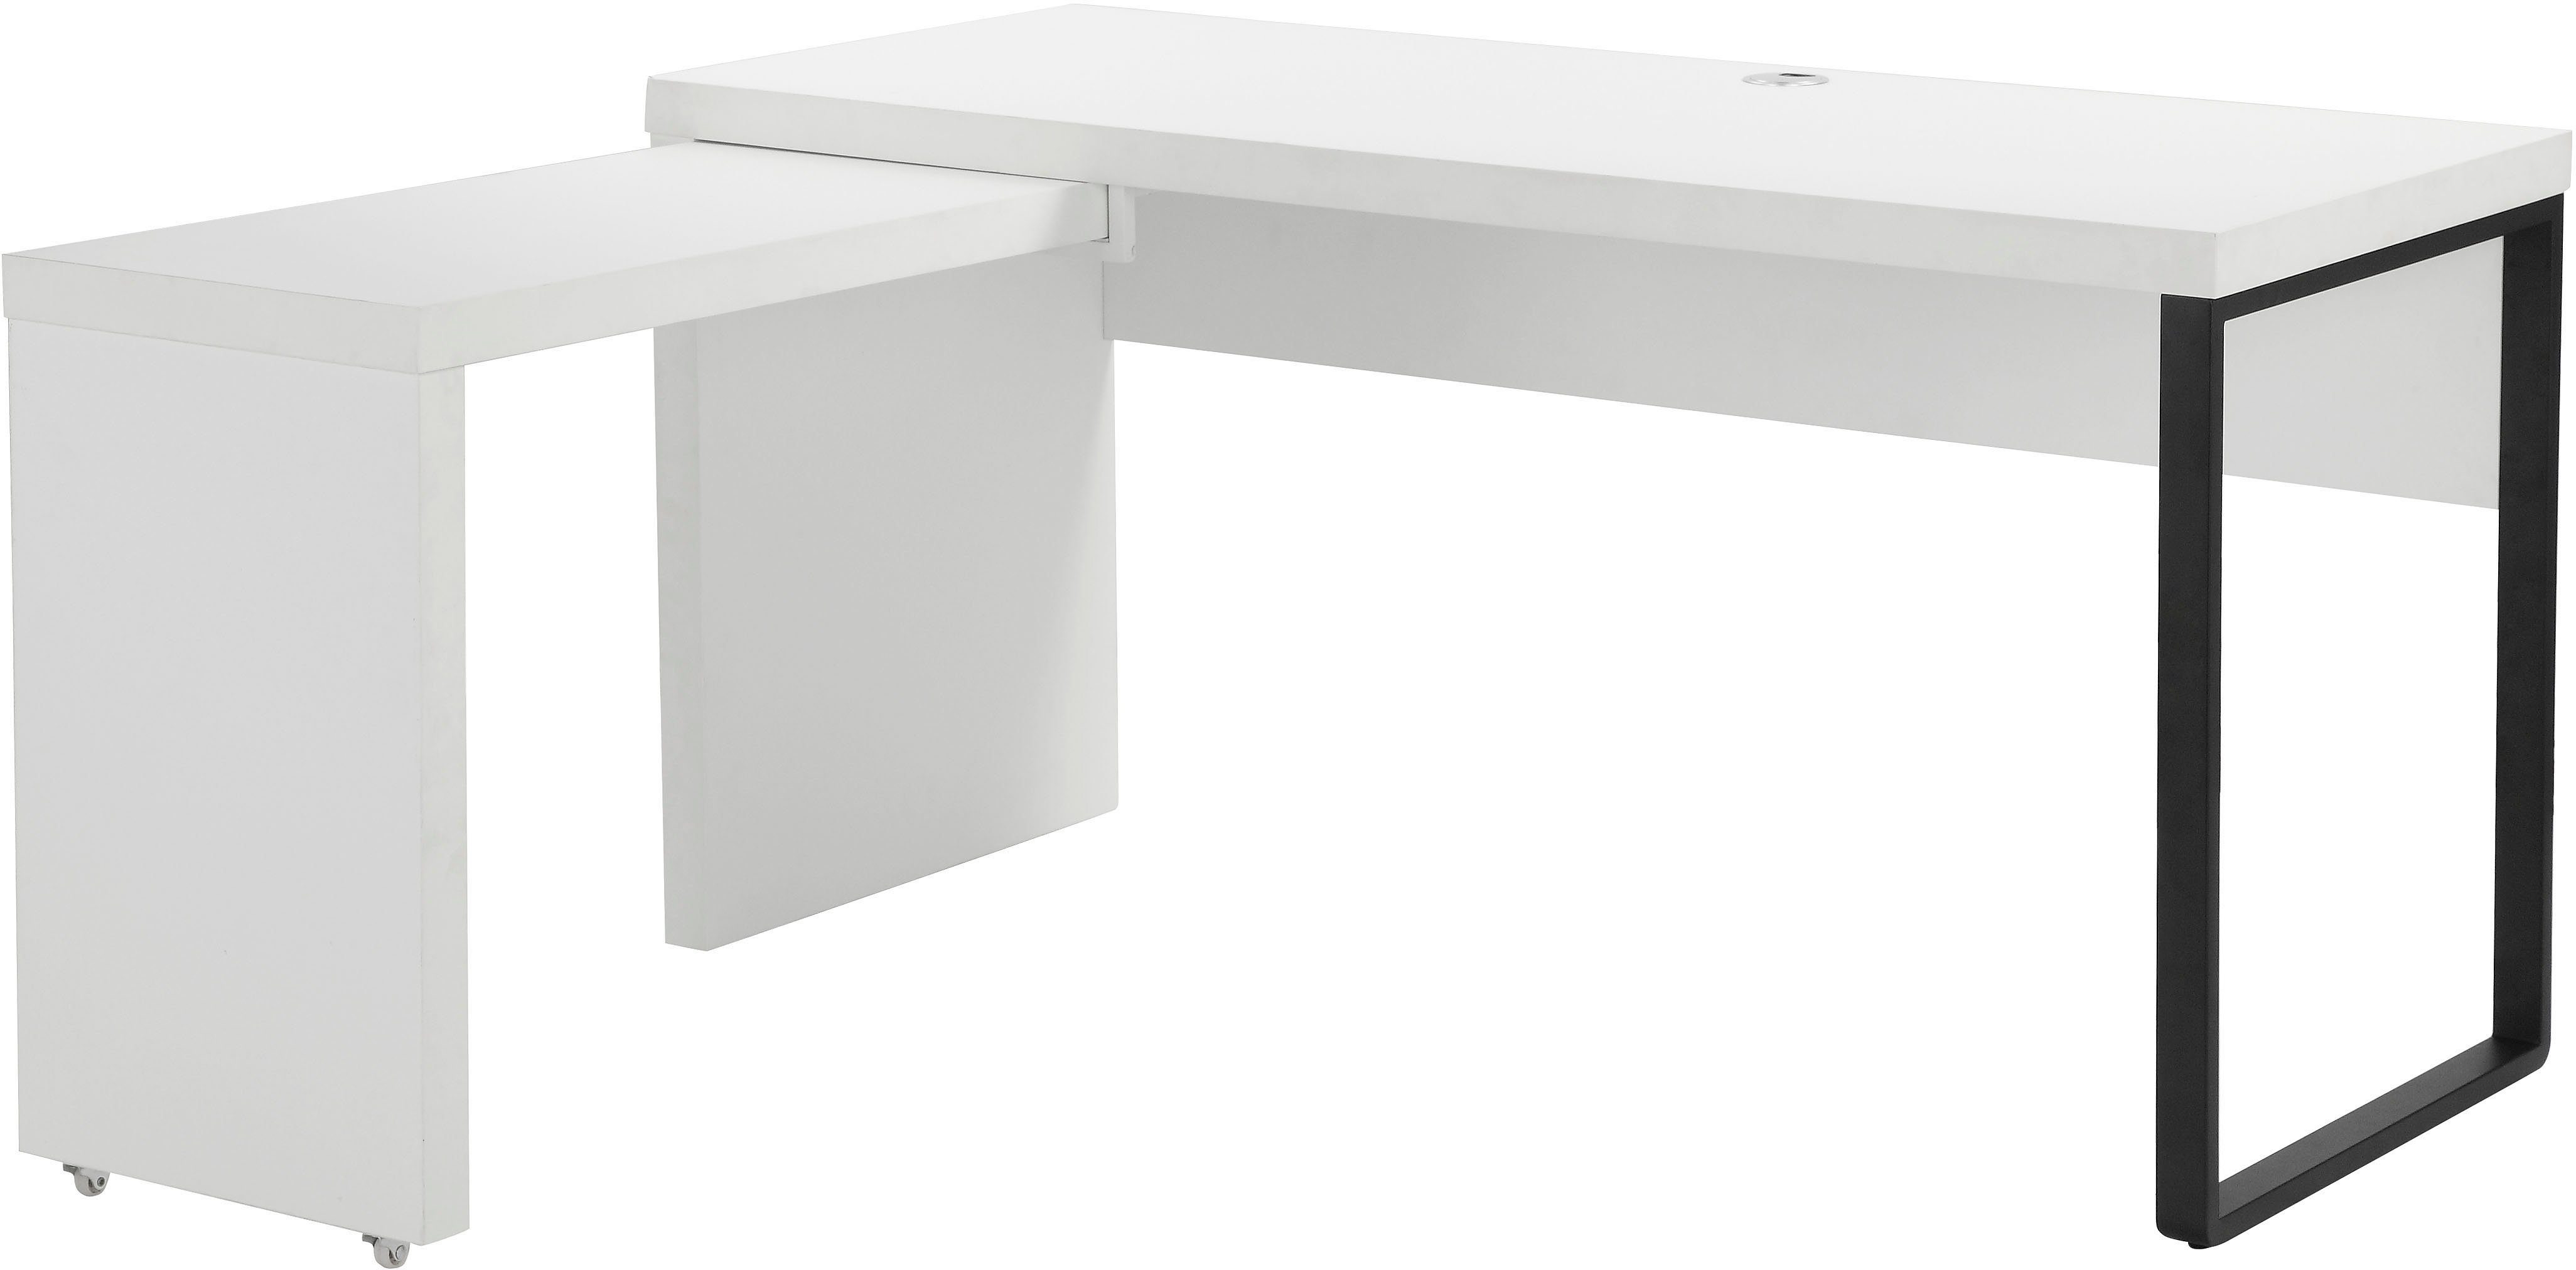 Places of Style Schreibtisch Maniago, mit rollbarem Element für mehr Arbeitsfläche, 140x81-131 cm